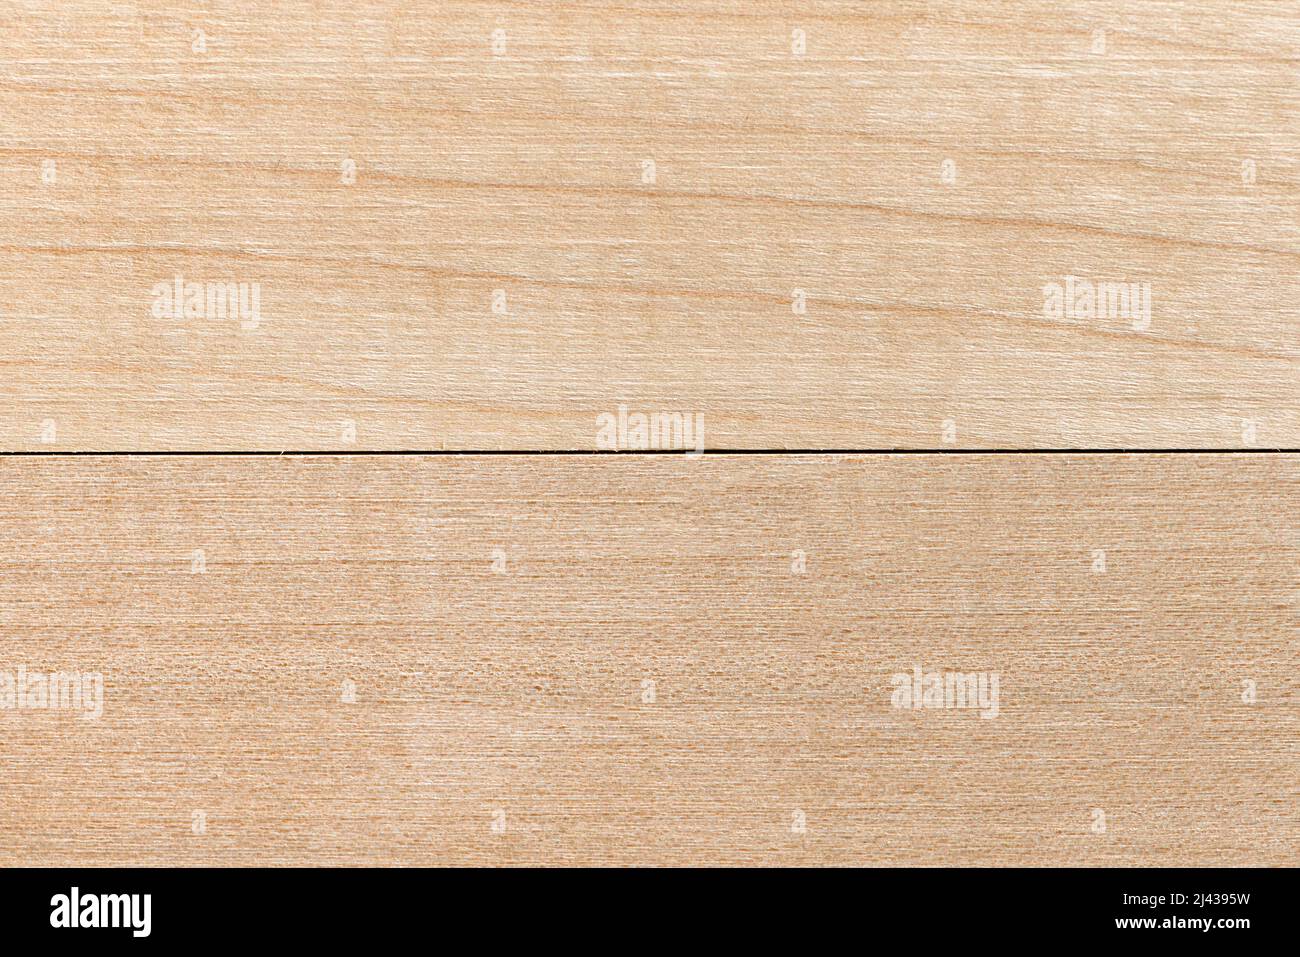 Die Textur eines Holzbretts. Hintergrund und Textur von hellem Holz. Nahaufnahme aus natürlichem Birkenholz. Unbemalter Fußboden in natürlichen Farbtönen Stockfoto